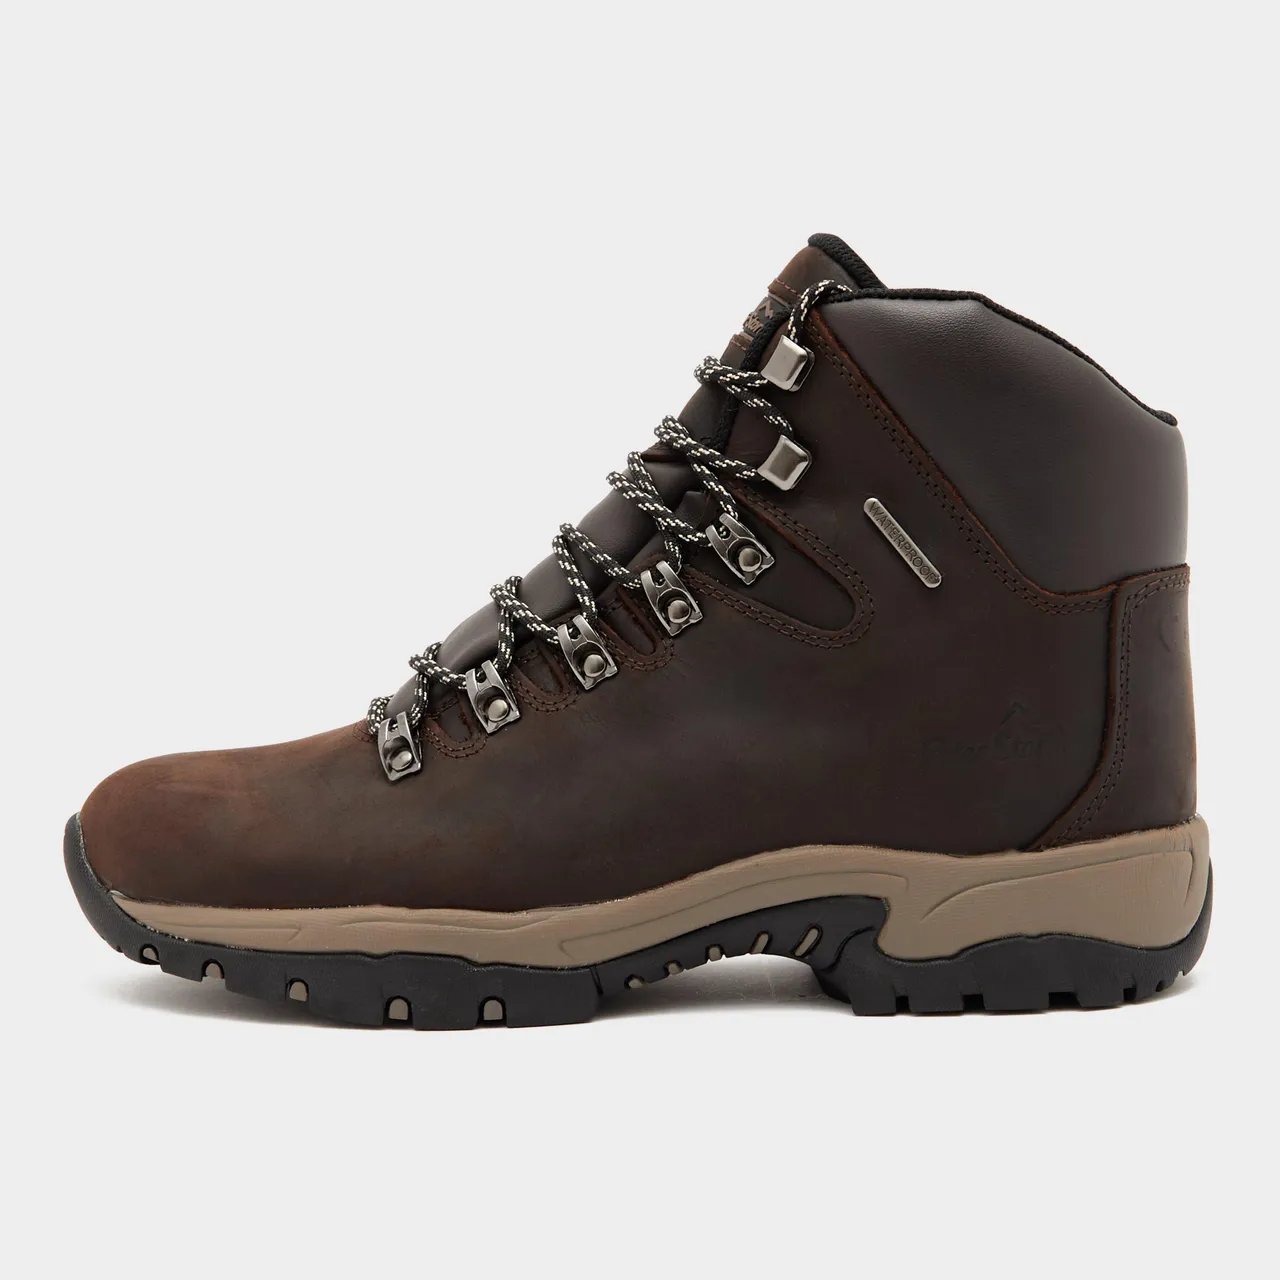 Men's Snowdon II Walking Boots, Brown